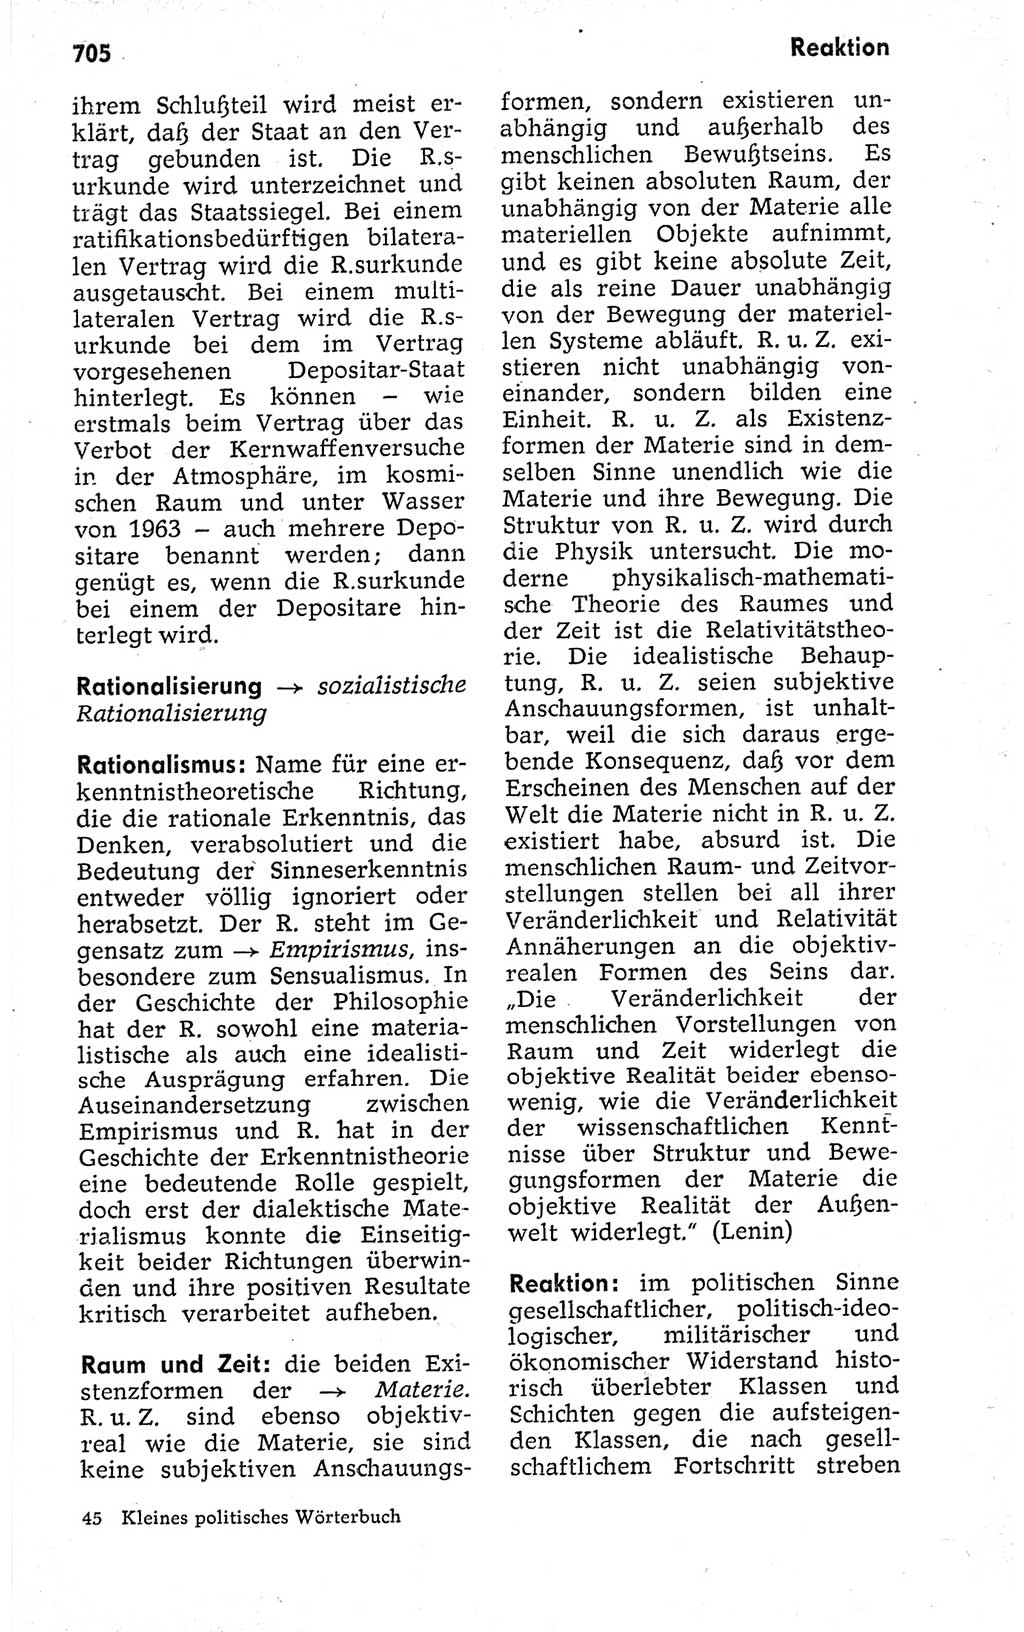 Kleines politisches Wörterbuch [Deutsche Demokratische Republik (DDR)] 1973, Seite 705 (Kl. pol. Wb. DDR 1973, S. 705)